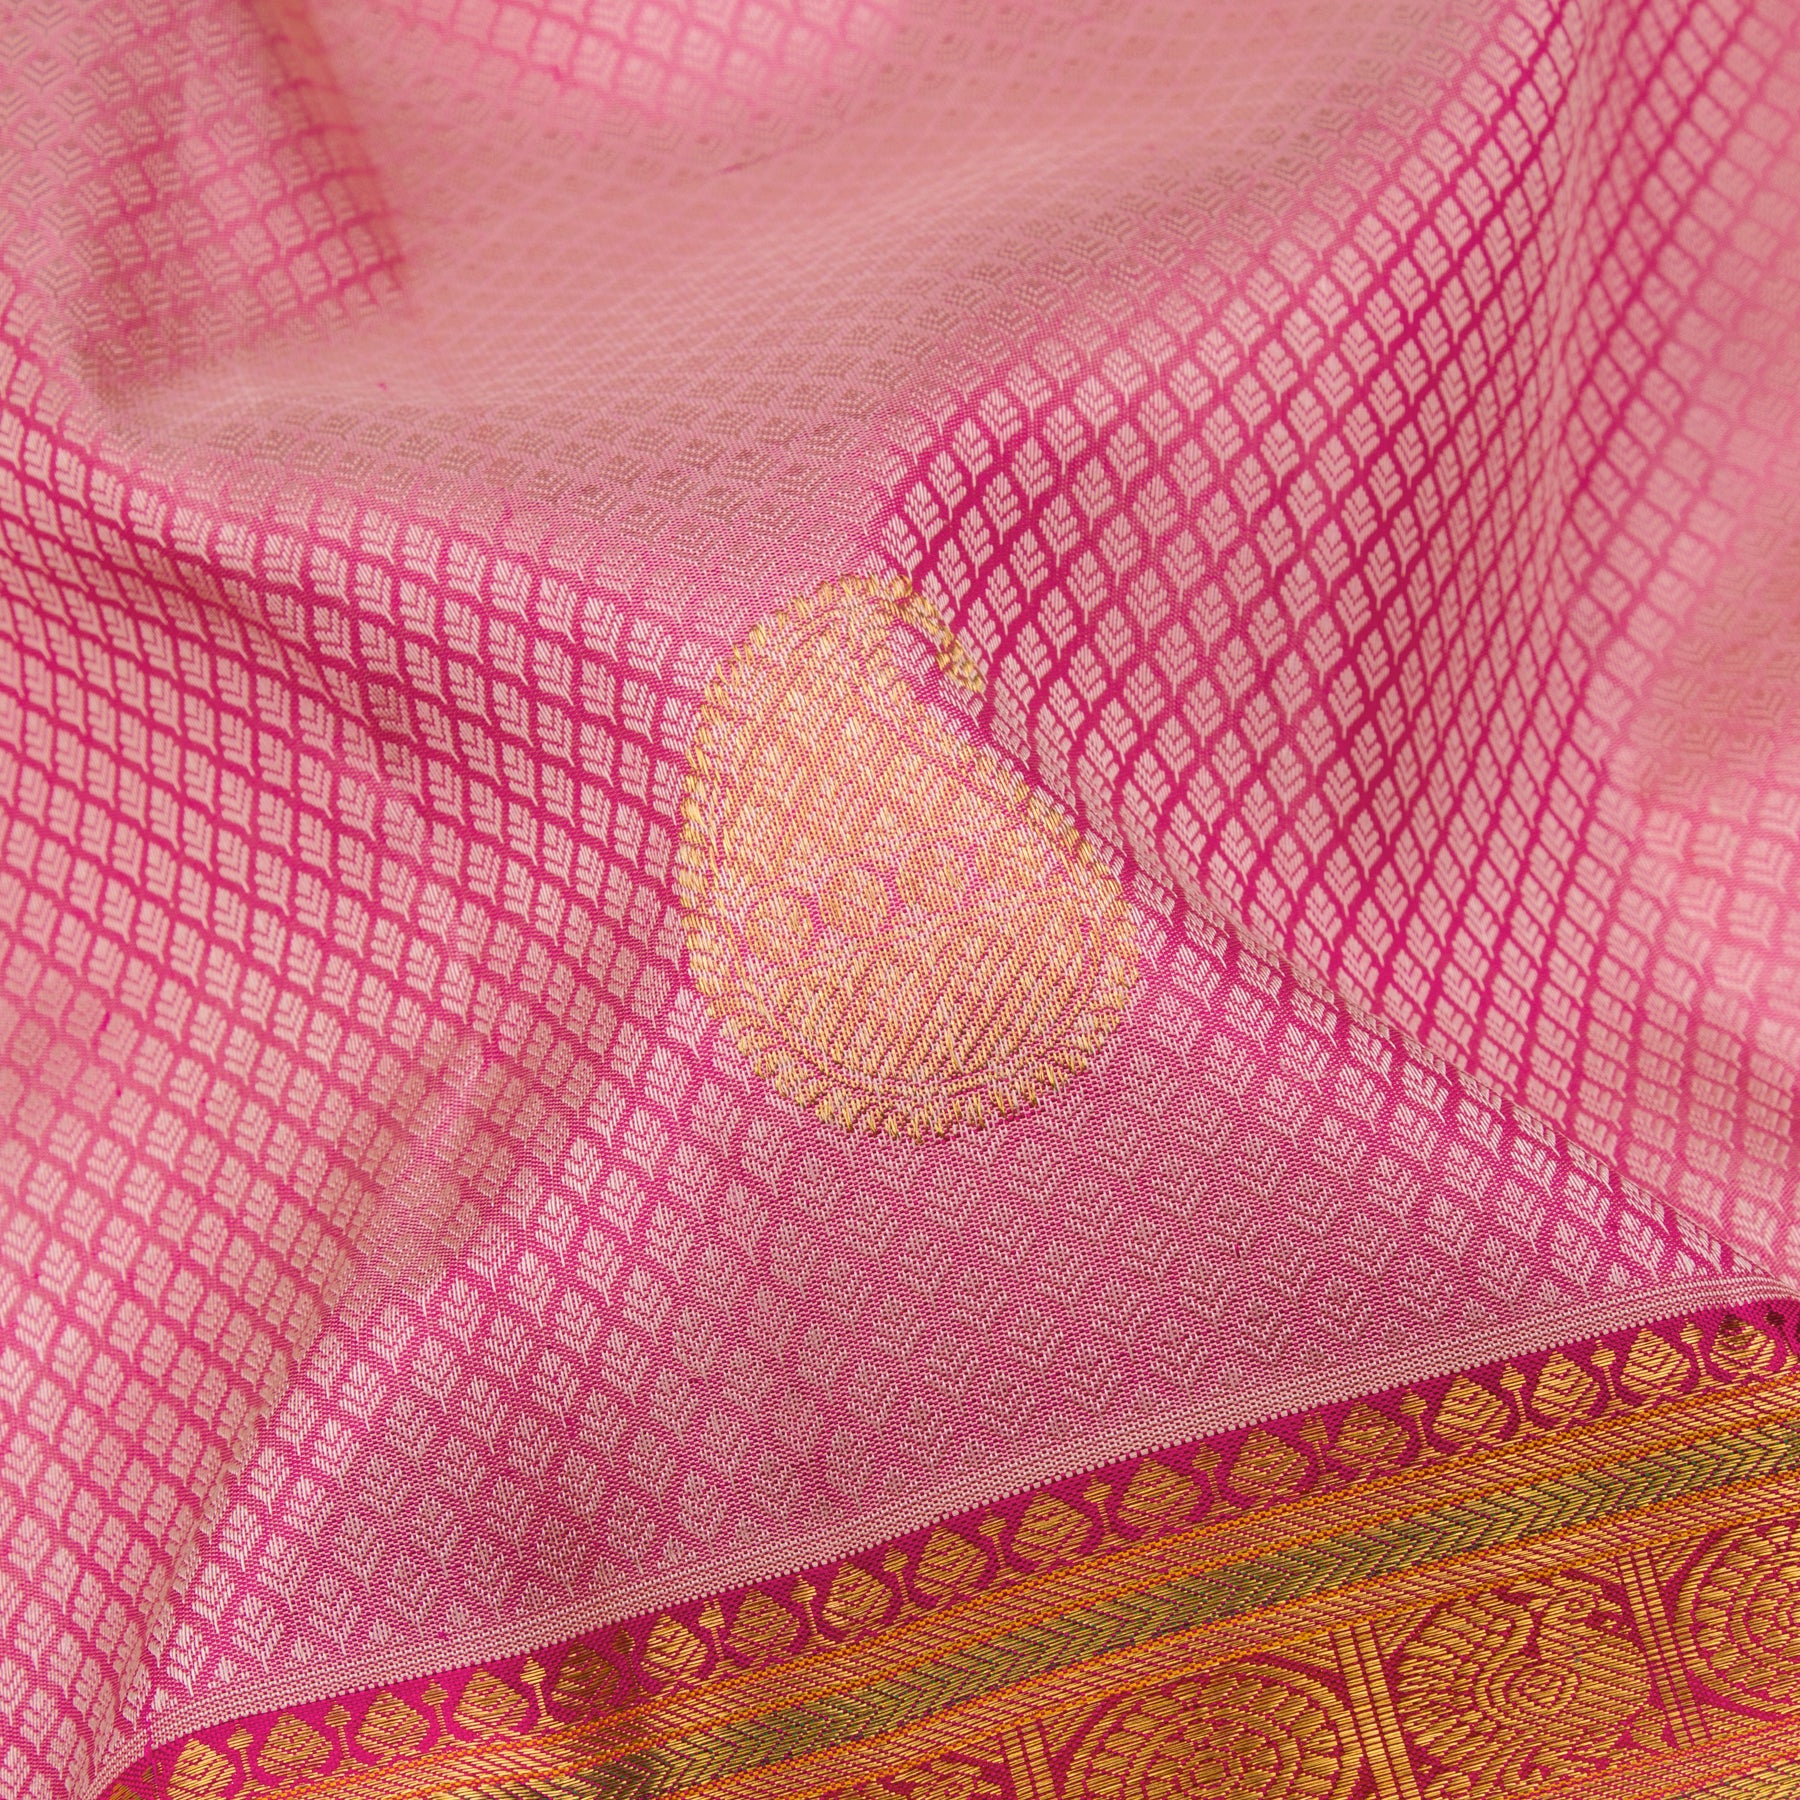 Kanakavalli Kanjivaram Silk Sari 23-110-HS001-12254 - Fabric View